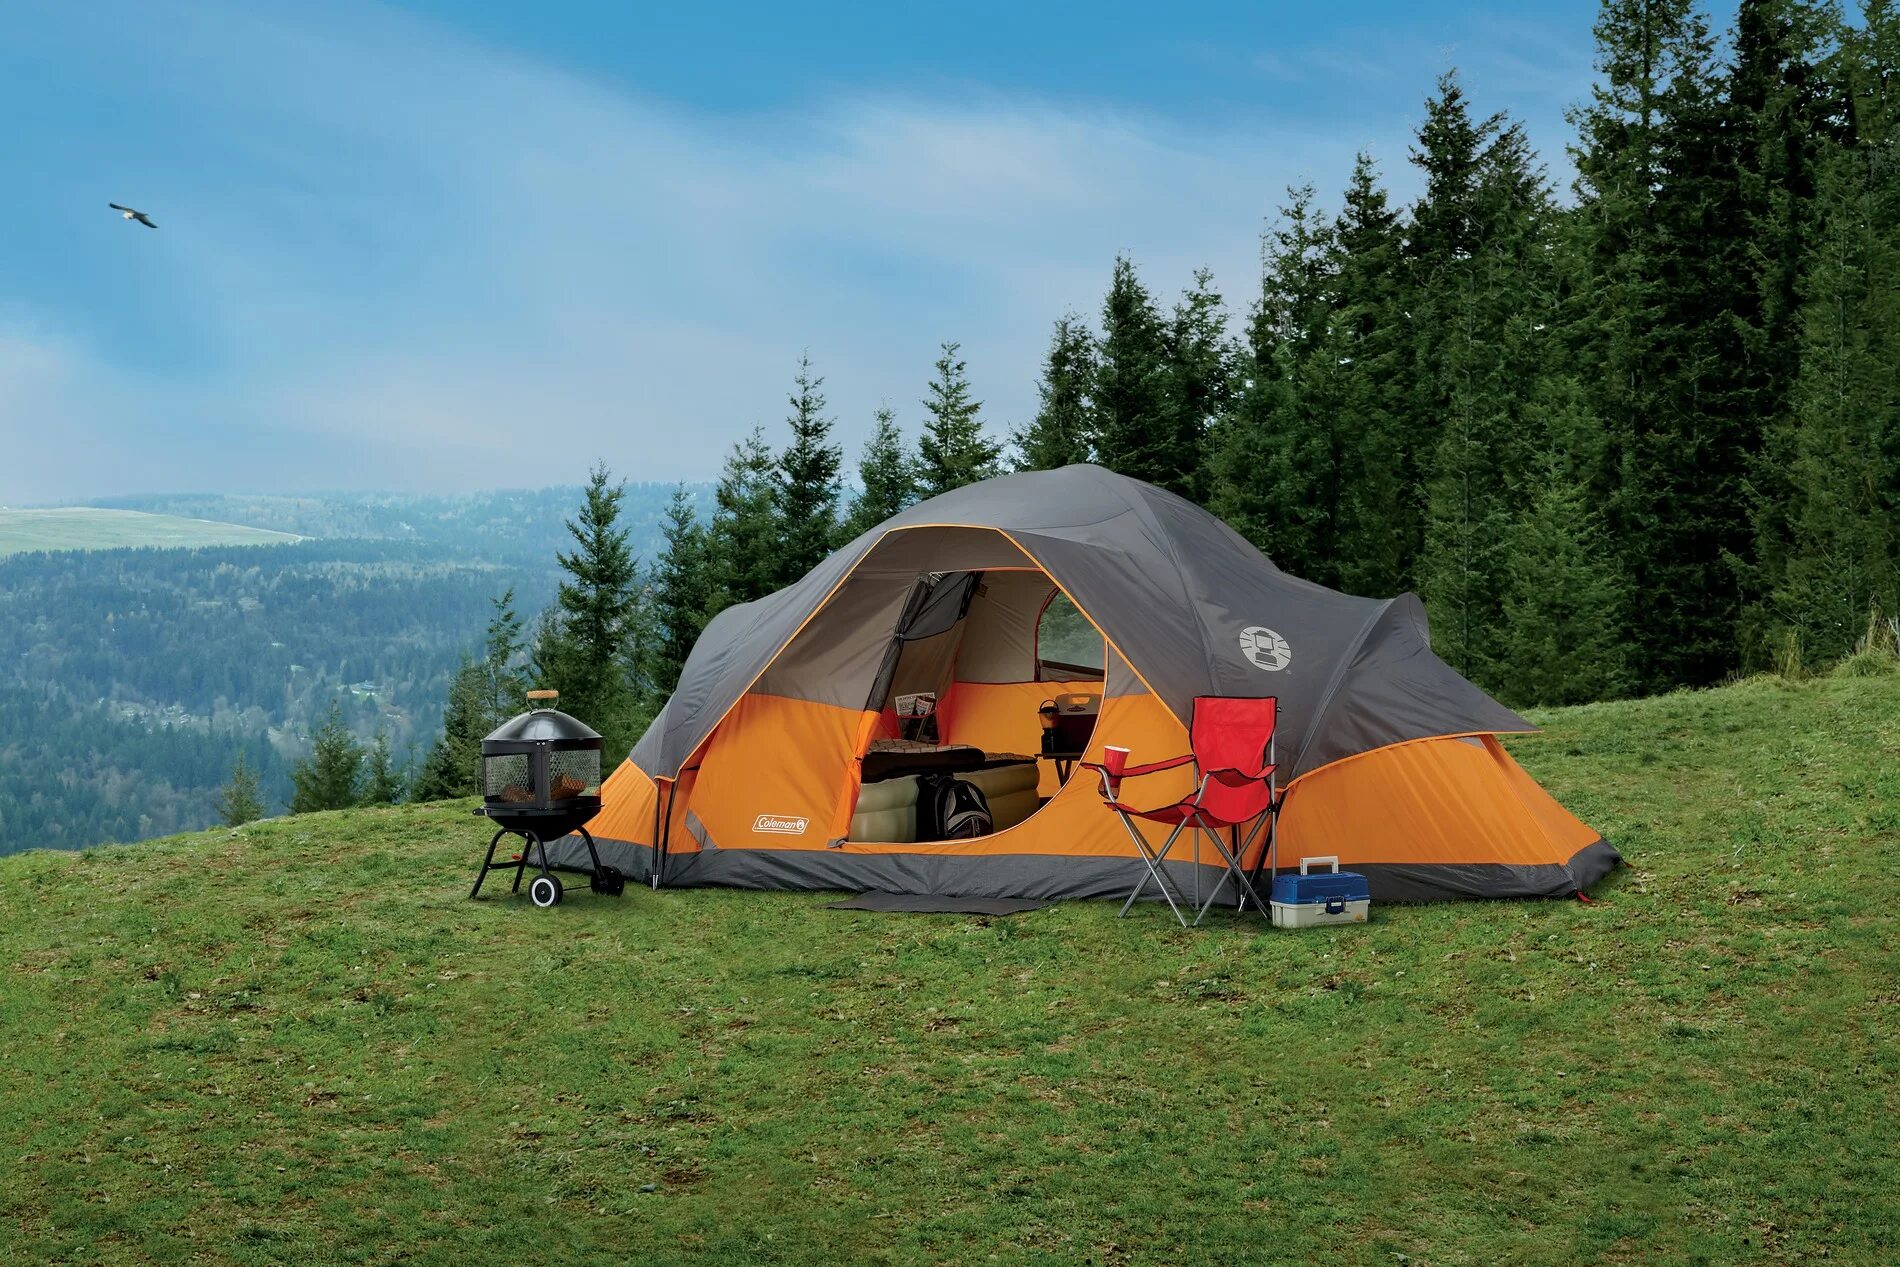 Палатка Camping Tent. Палатка campact- Tent Camp Voyager 5. Палатка Трамп Камп 5. Палатка campact Tent Lake. Camping explore